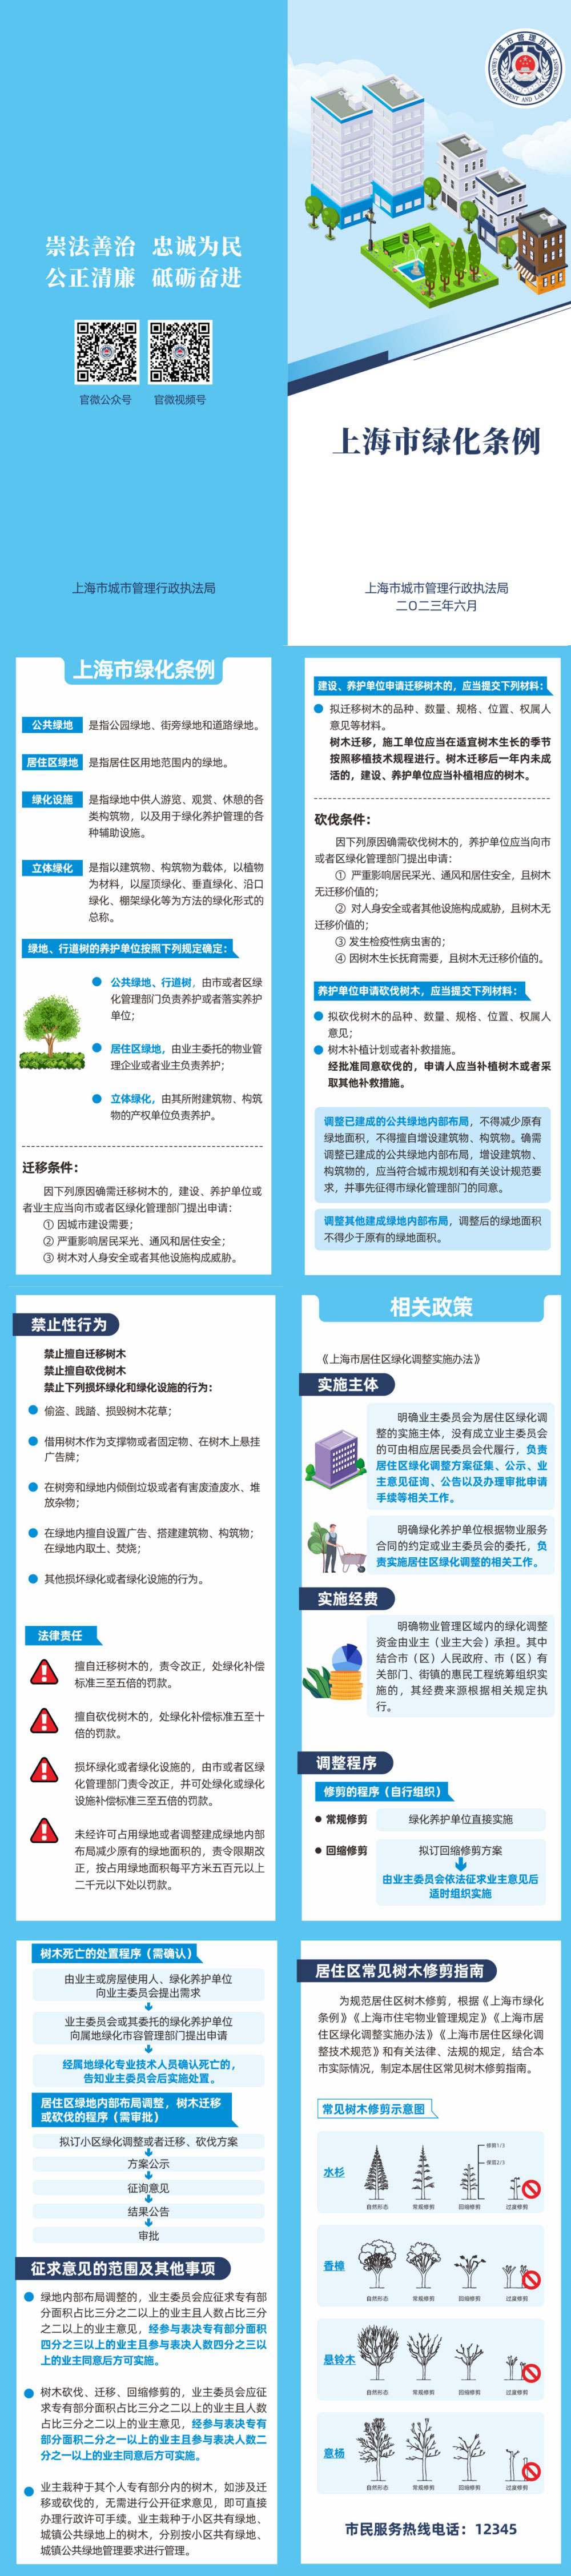 5上海市绿化条例.jpg